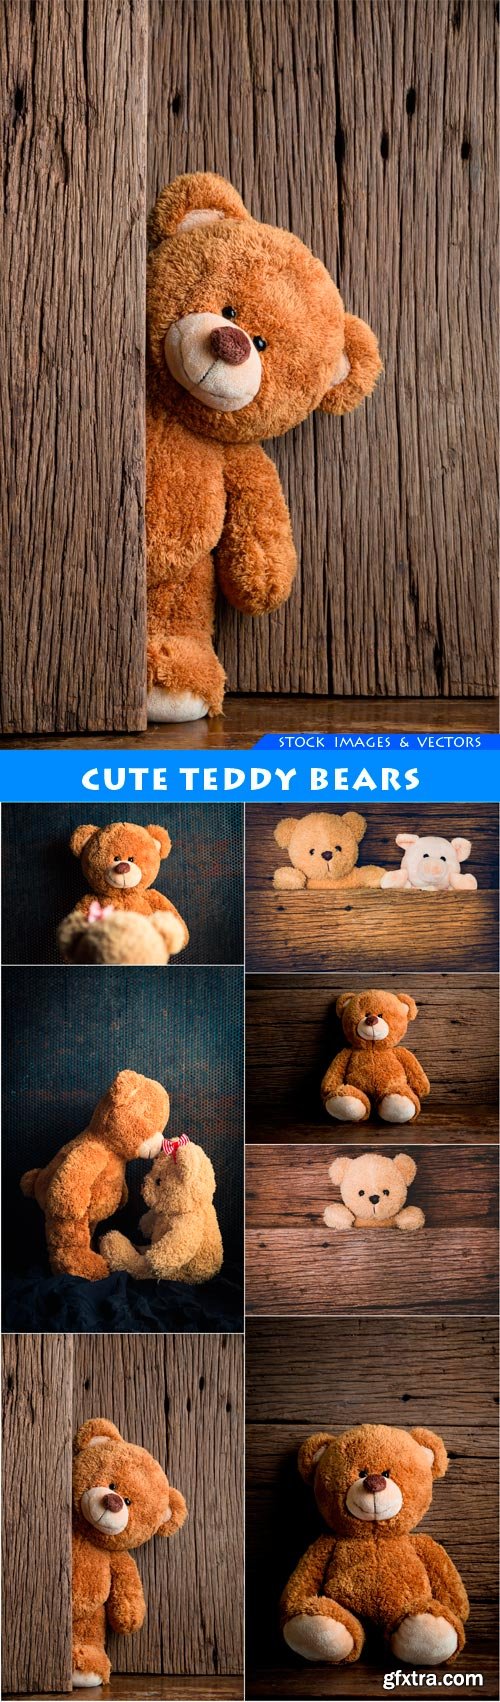 Cute teddy bears 7X JPEG